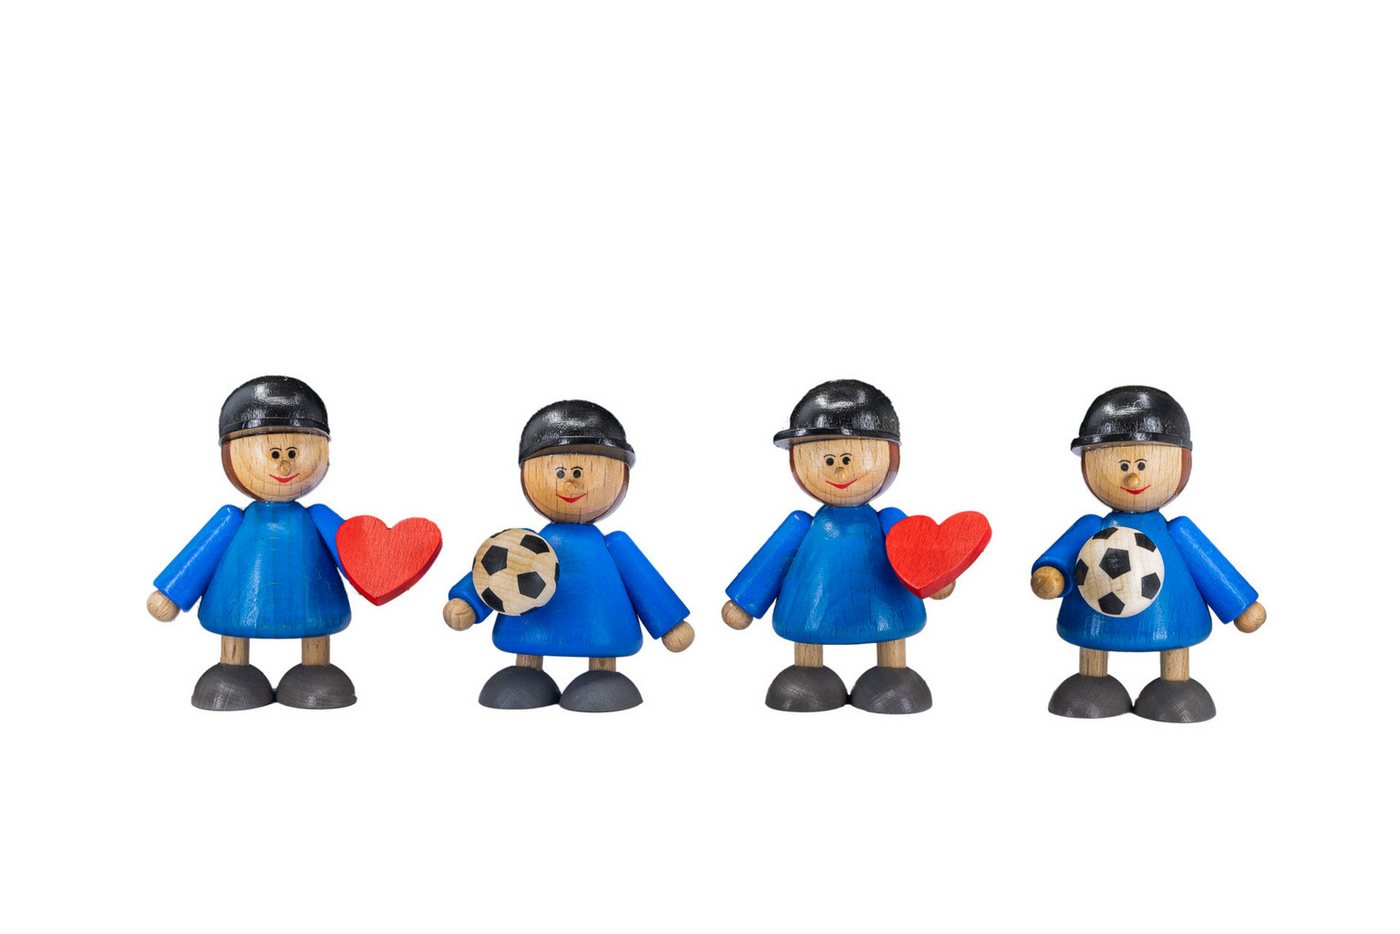 Holzwaren Egermann Dekofigur 455, Junge mit Herz mit Fußball - in Blau -, 4 Figuren aus Holz - ca. 6cm - Made in Germany von Holzwaren Egermann